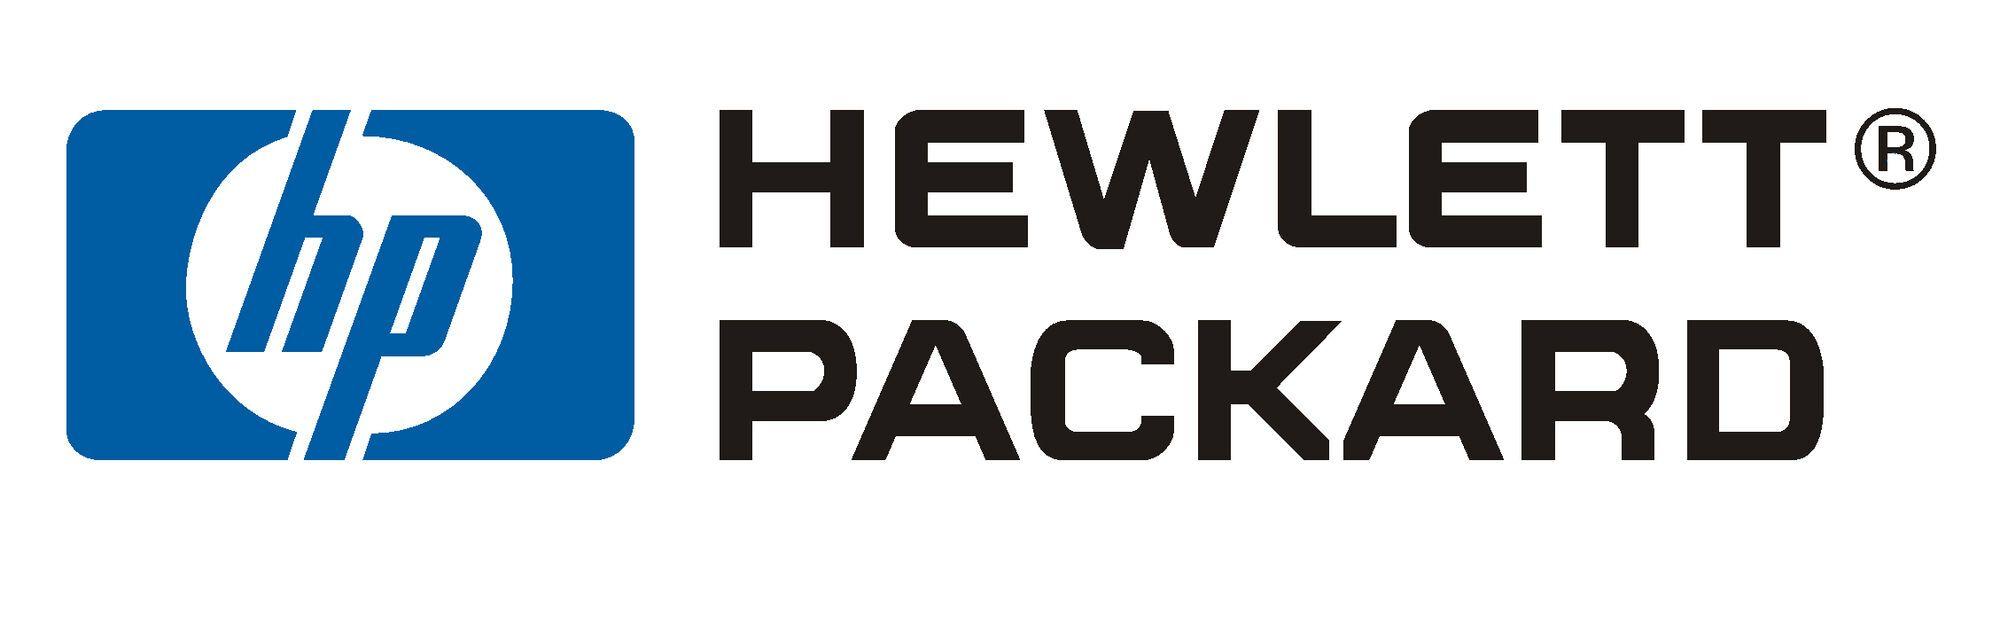 Packard Logo - Hewlett Packard Other